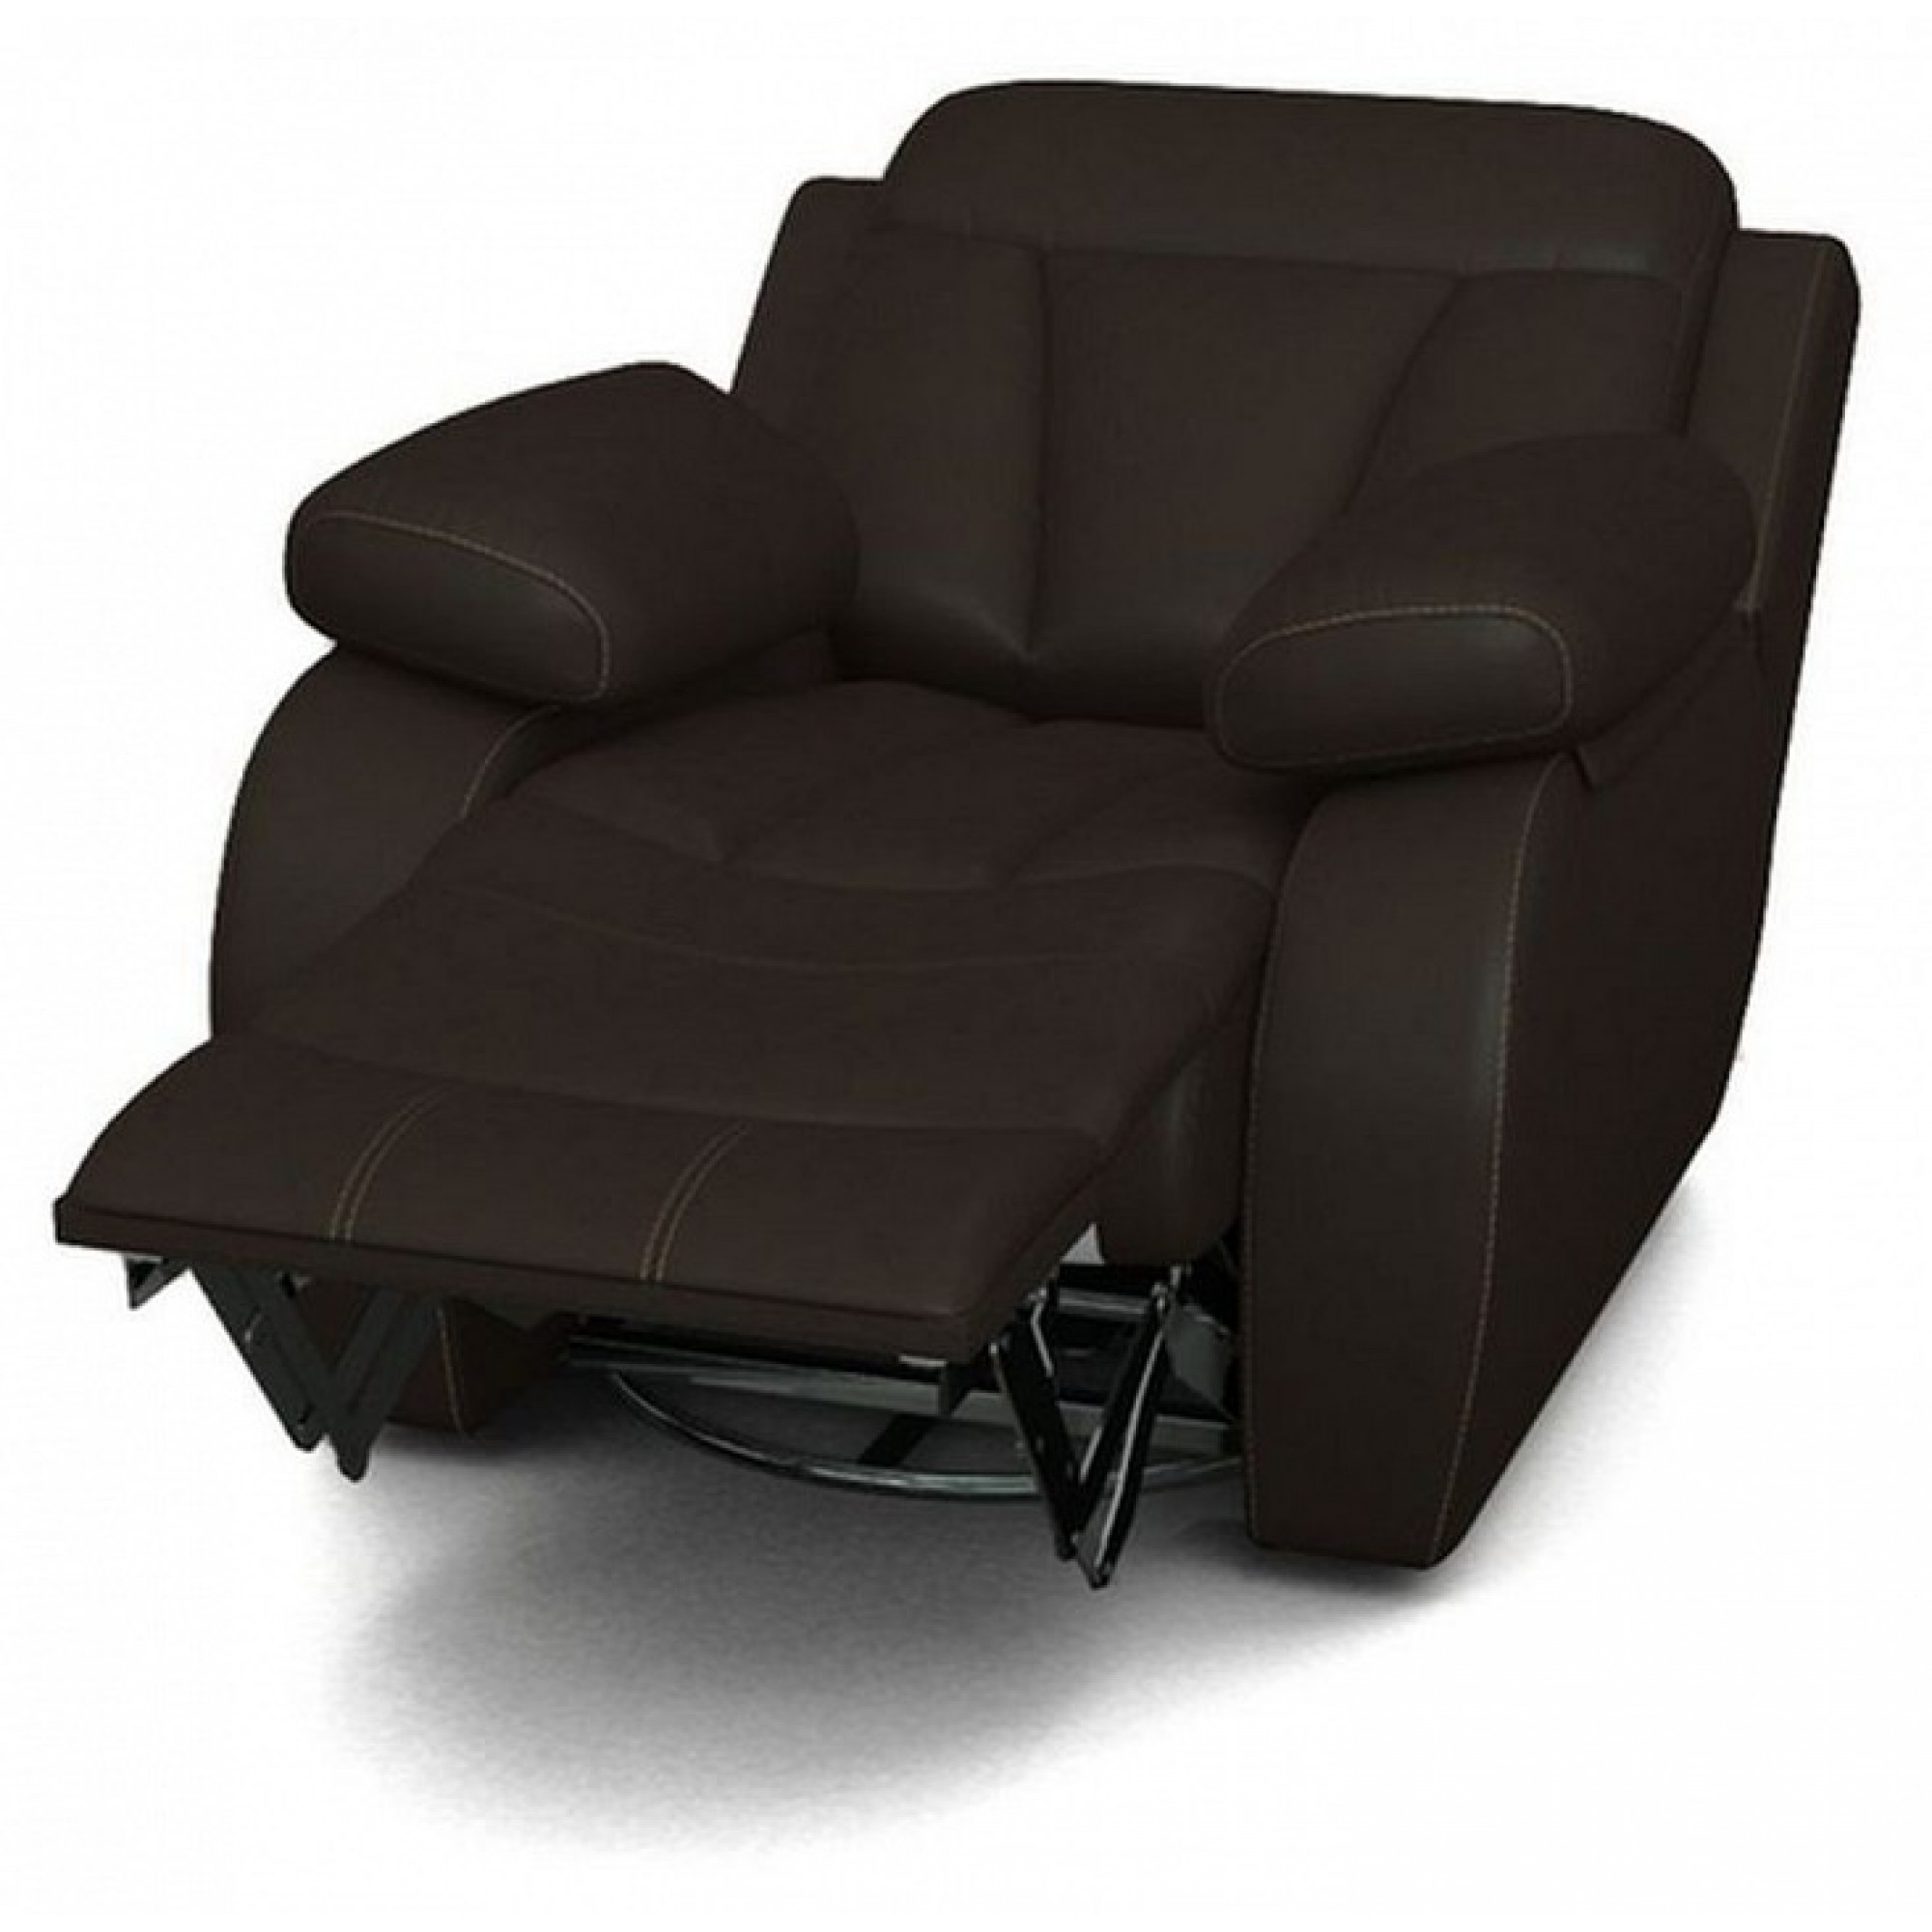 Кресло-качалка Манчестер коричневый ORM_104-107-102-MANCHESTER-3